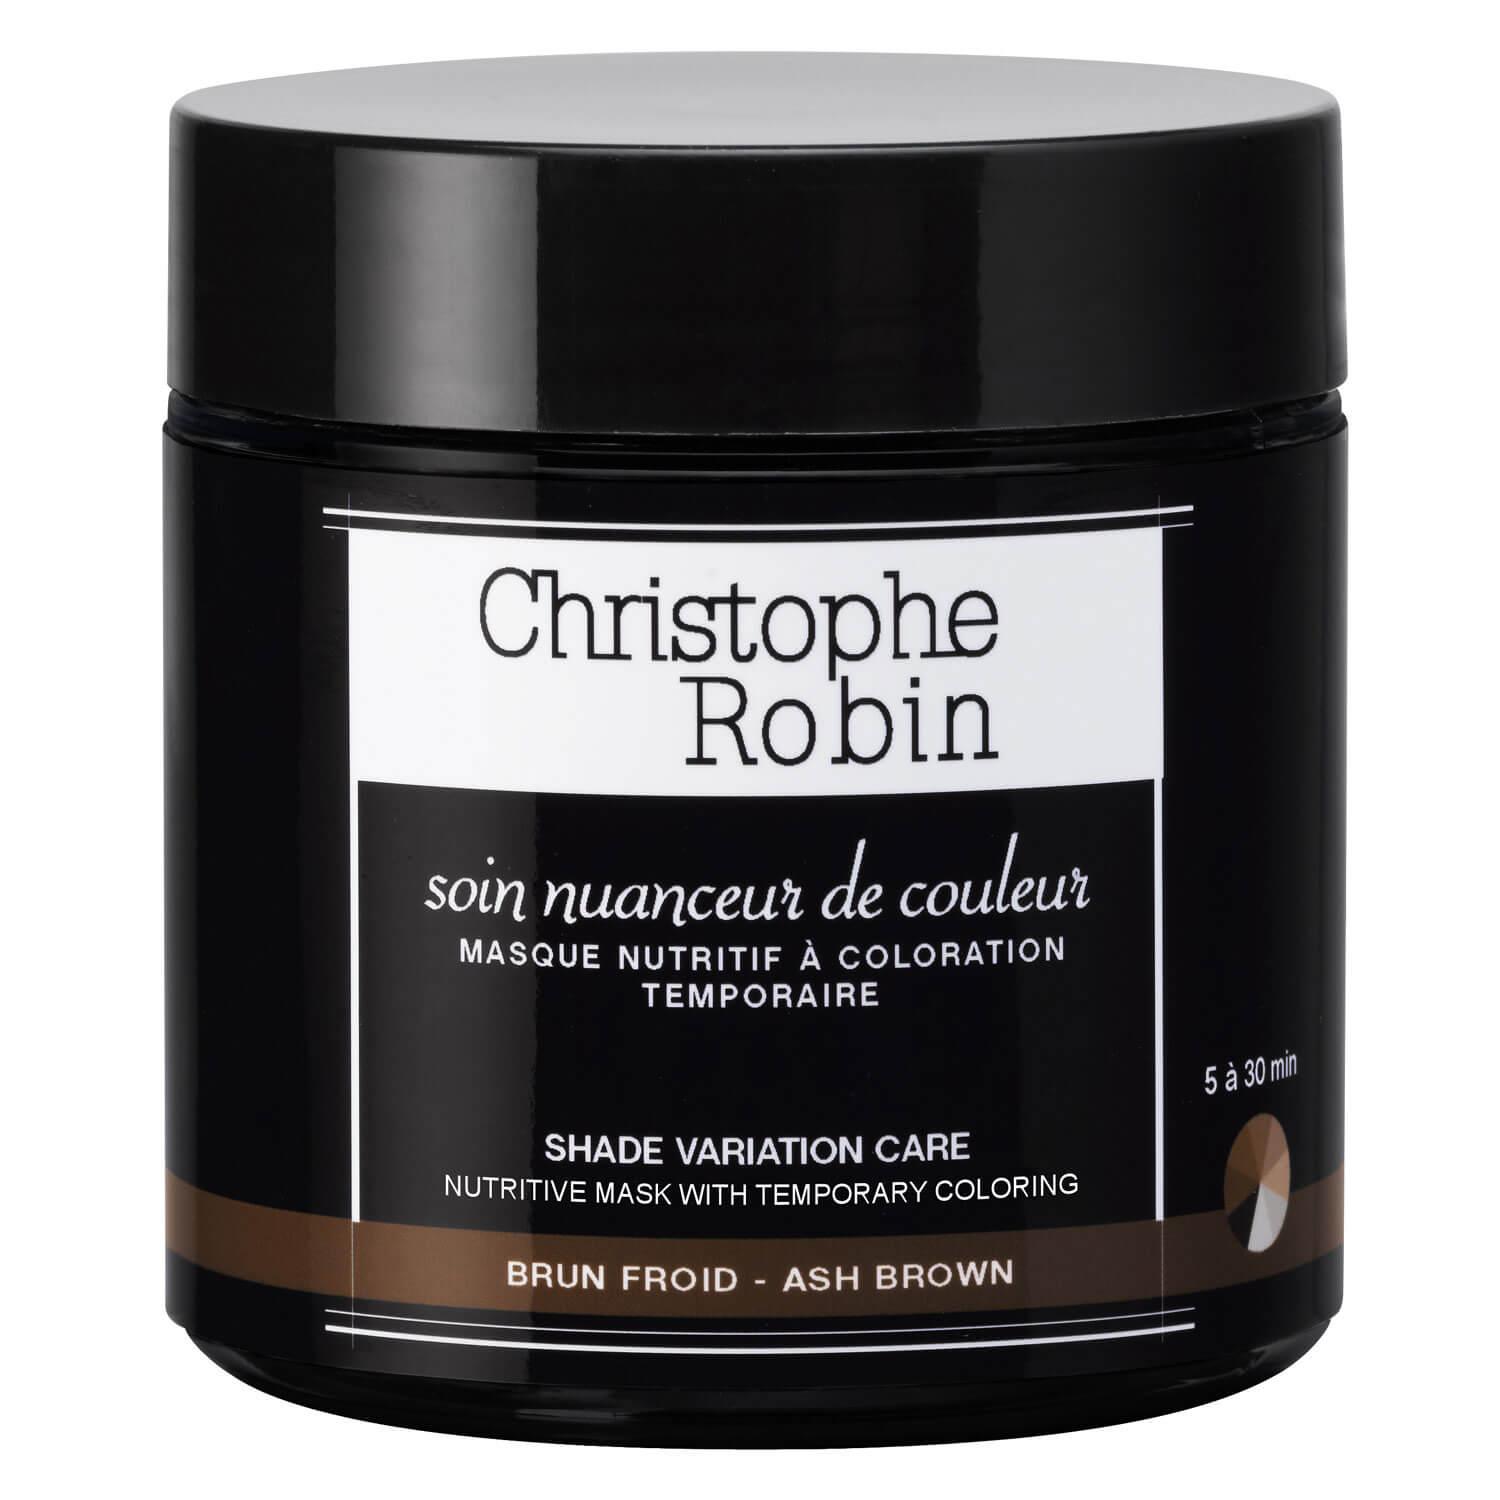 Christophe Robin - Soin nuanceur de couleur brun froid